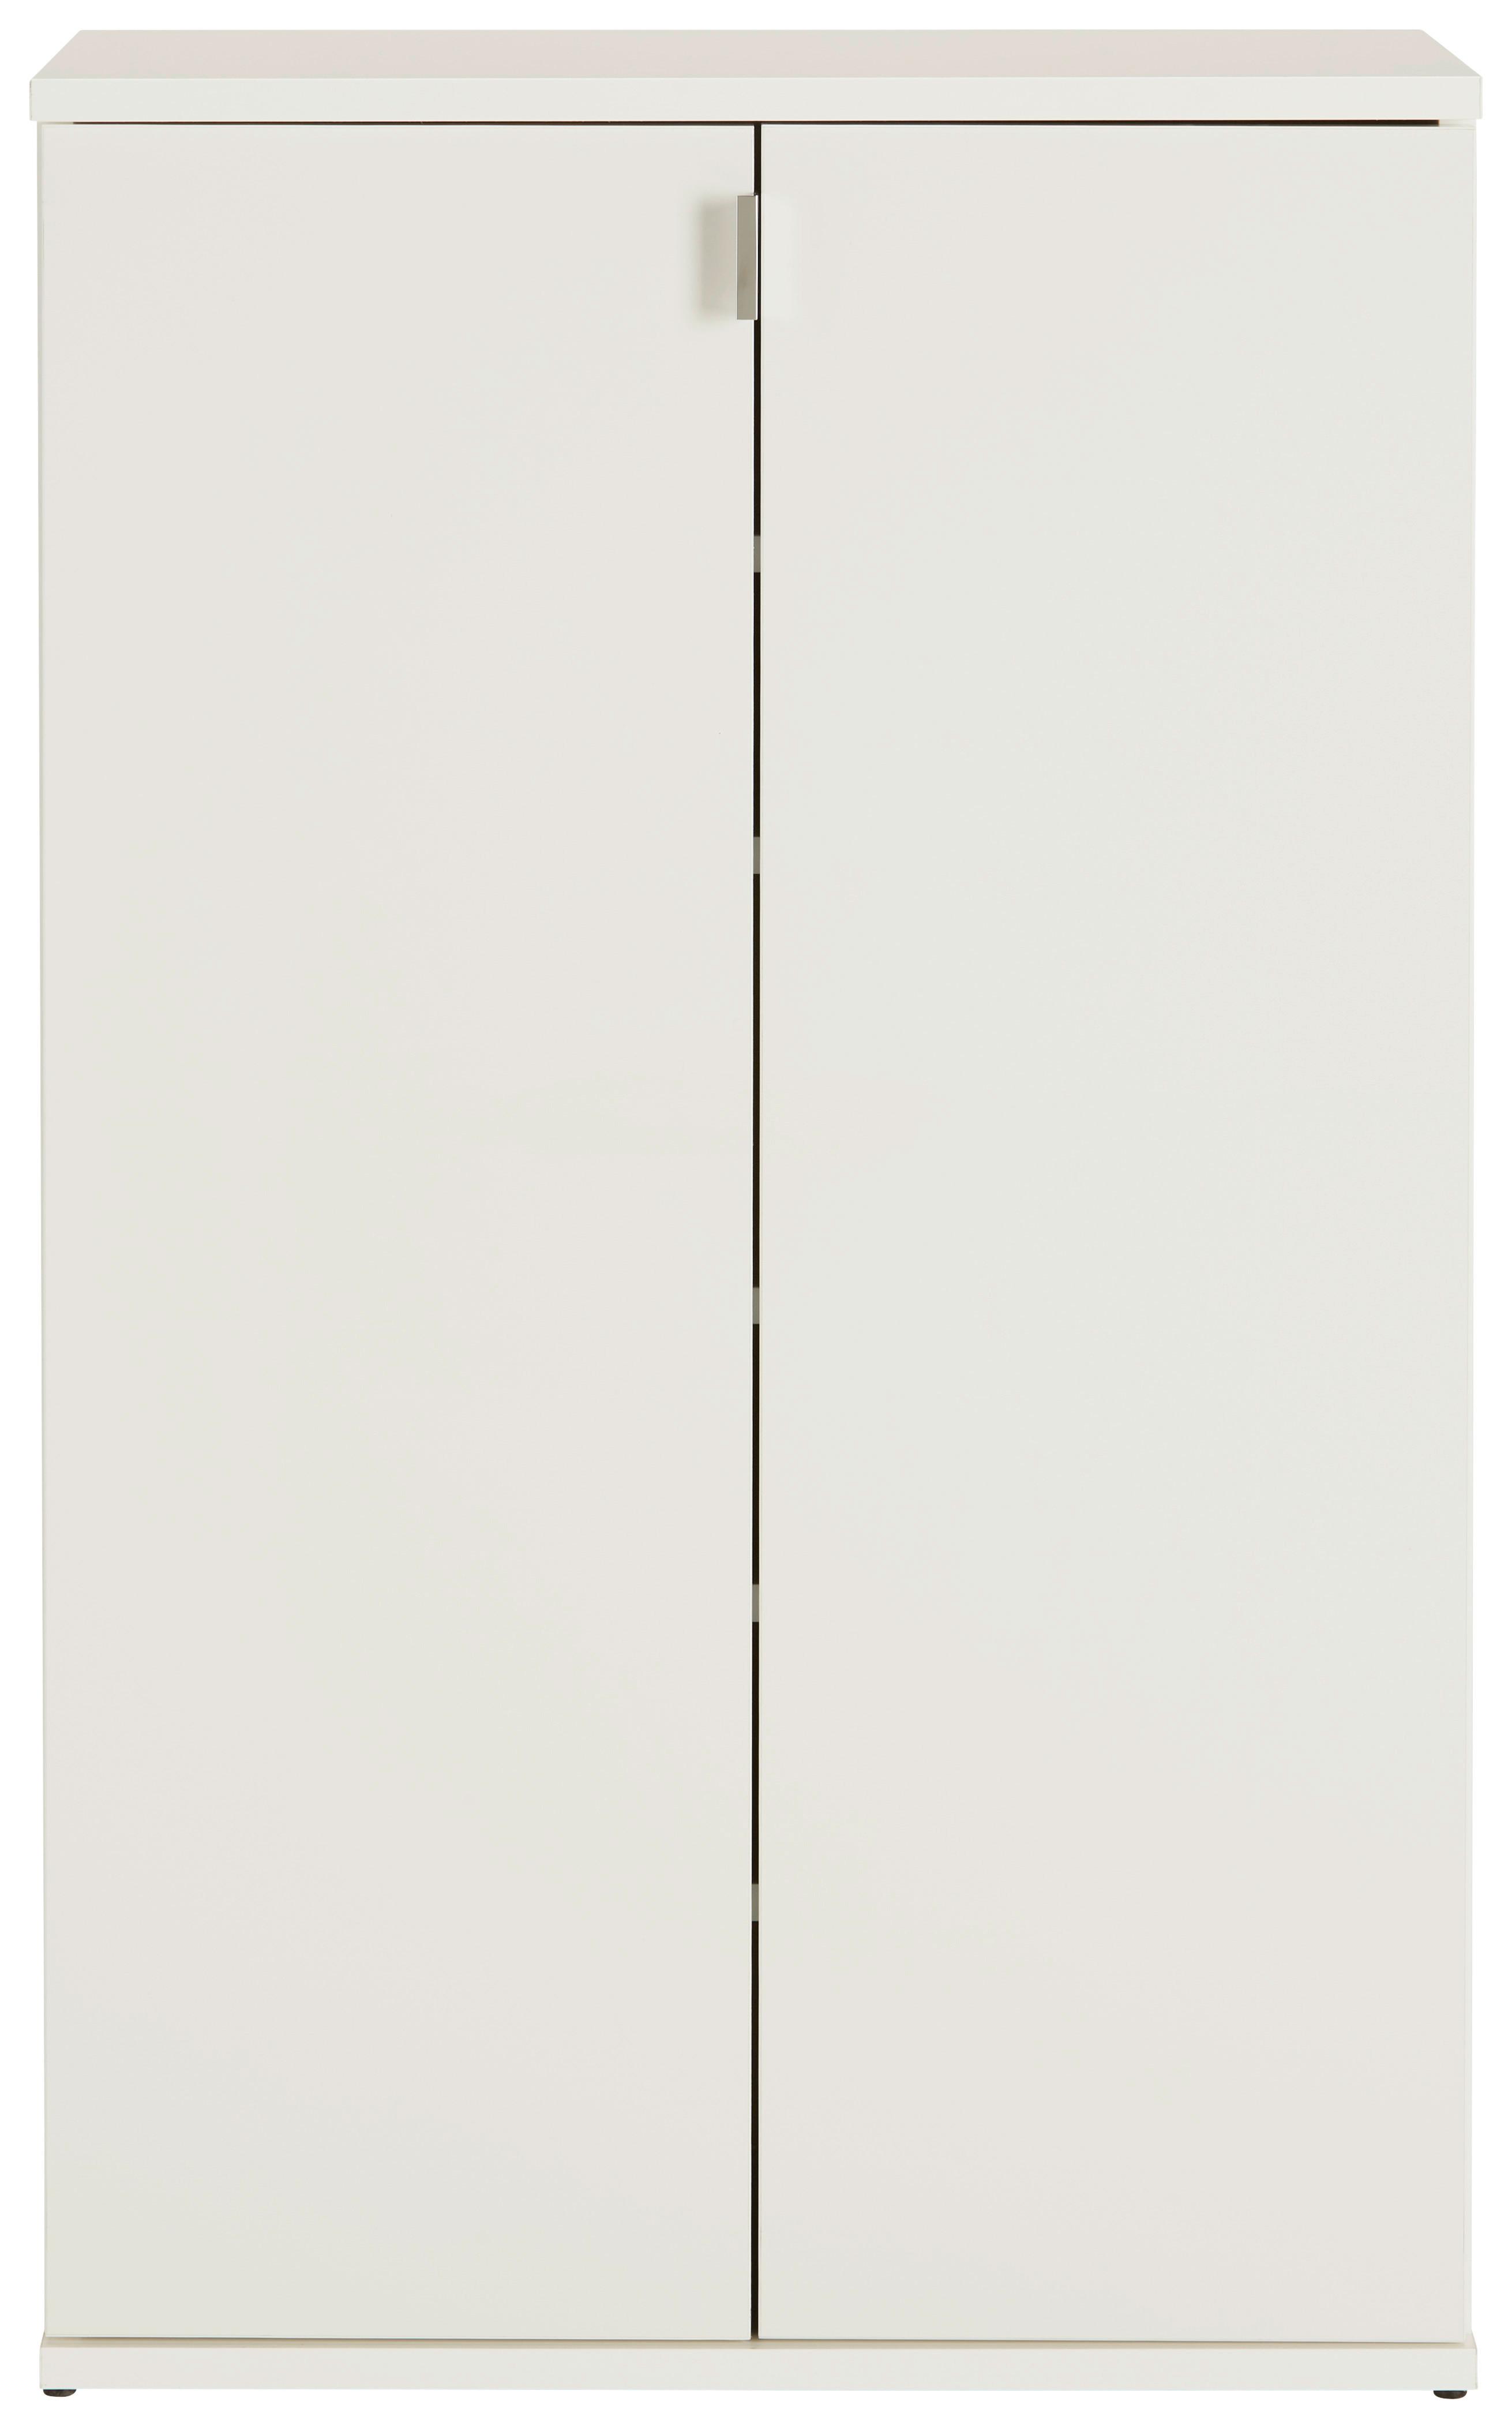 Omara Za Čevlje Projekt X - barve kroma/črna, Moderno, kovina/leseni material (61/99/34cm) - Modern Living